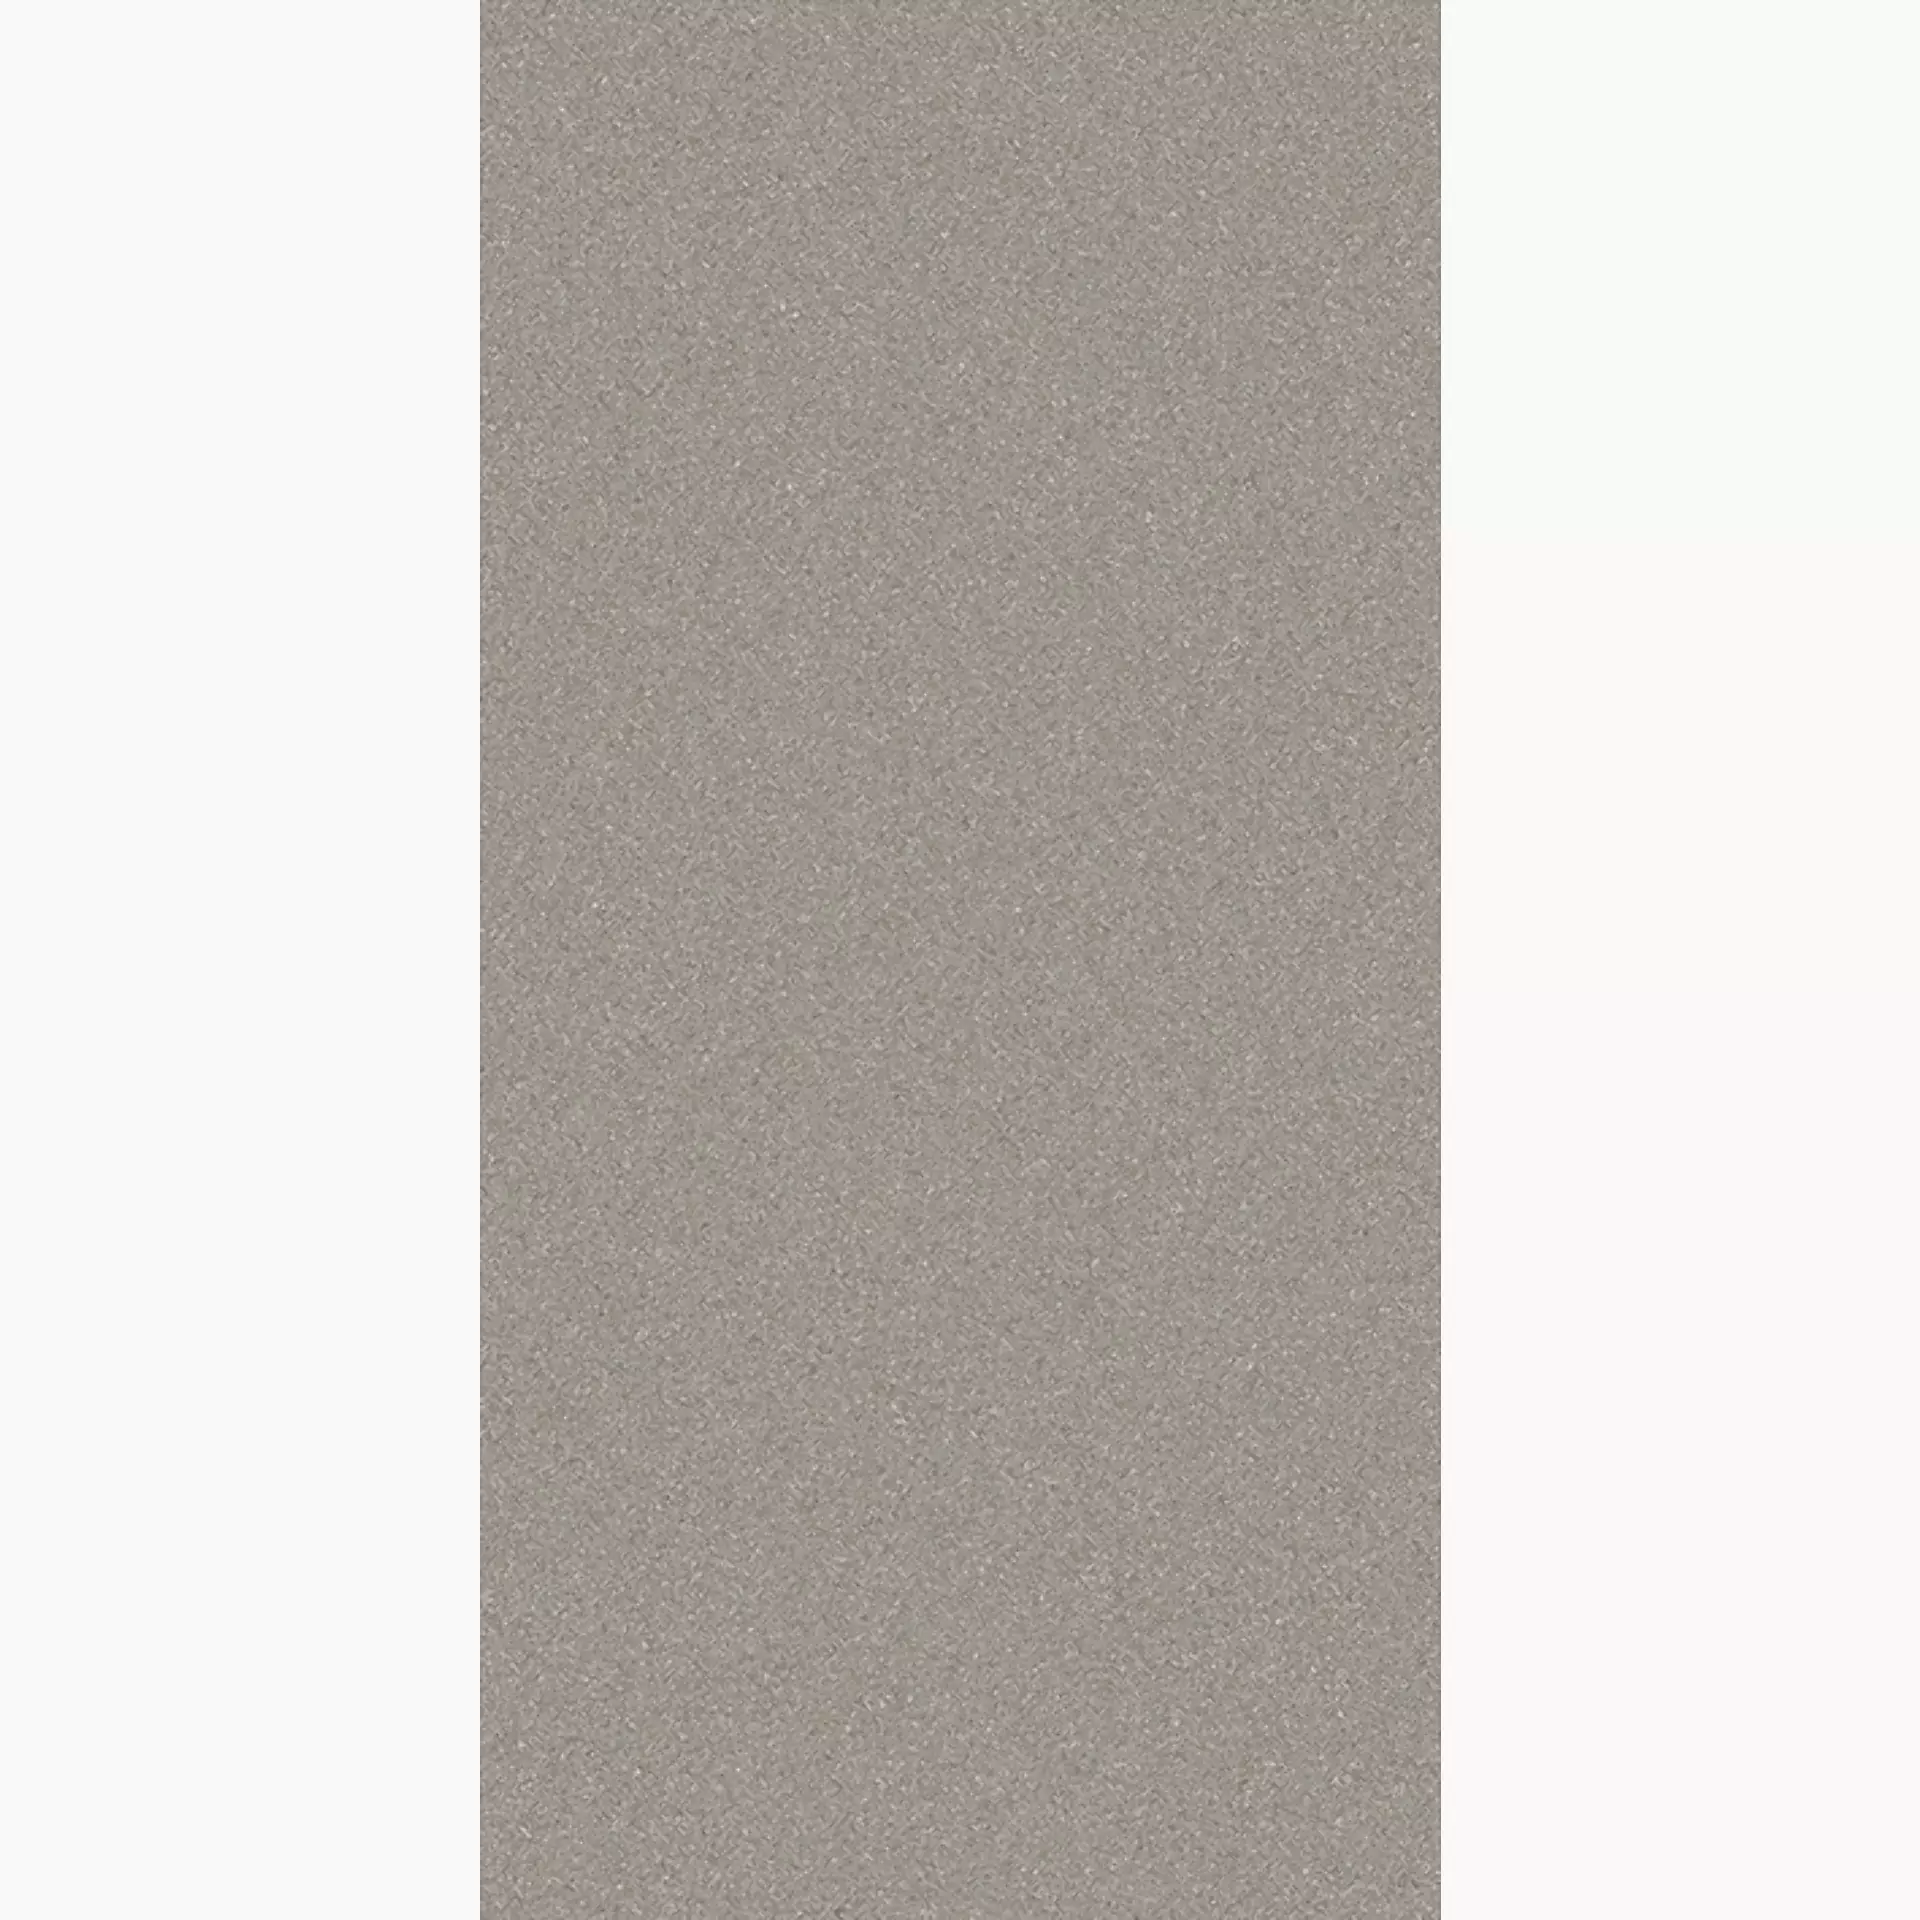 Wandfliese,Bodenfliese Villeroy & Boch Pure Line 2.0 Cement Grey Matt Cement Grey 2754-UL61 matt 30x60cm rektifiziert 12mm